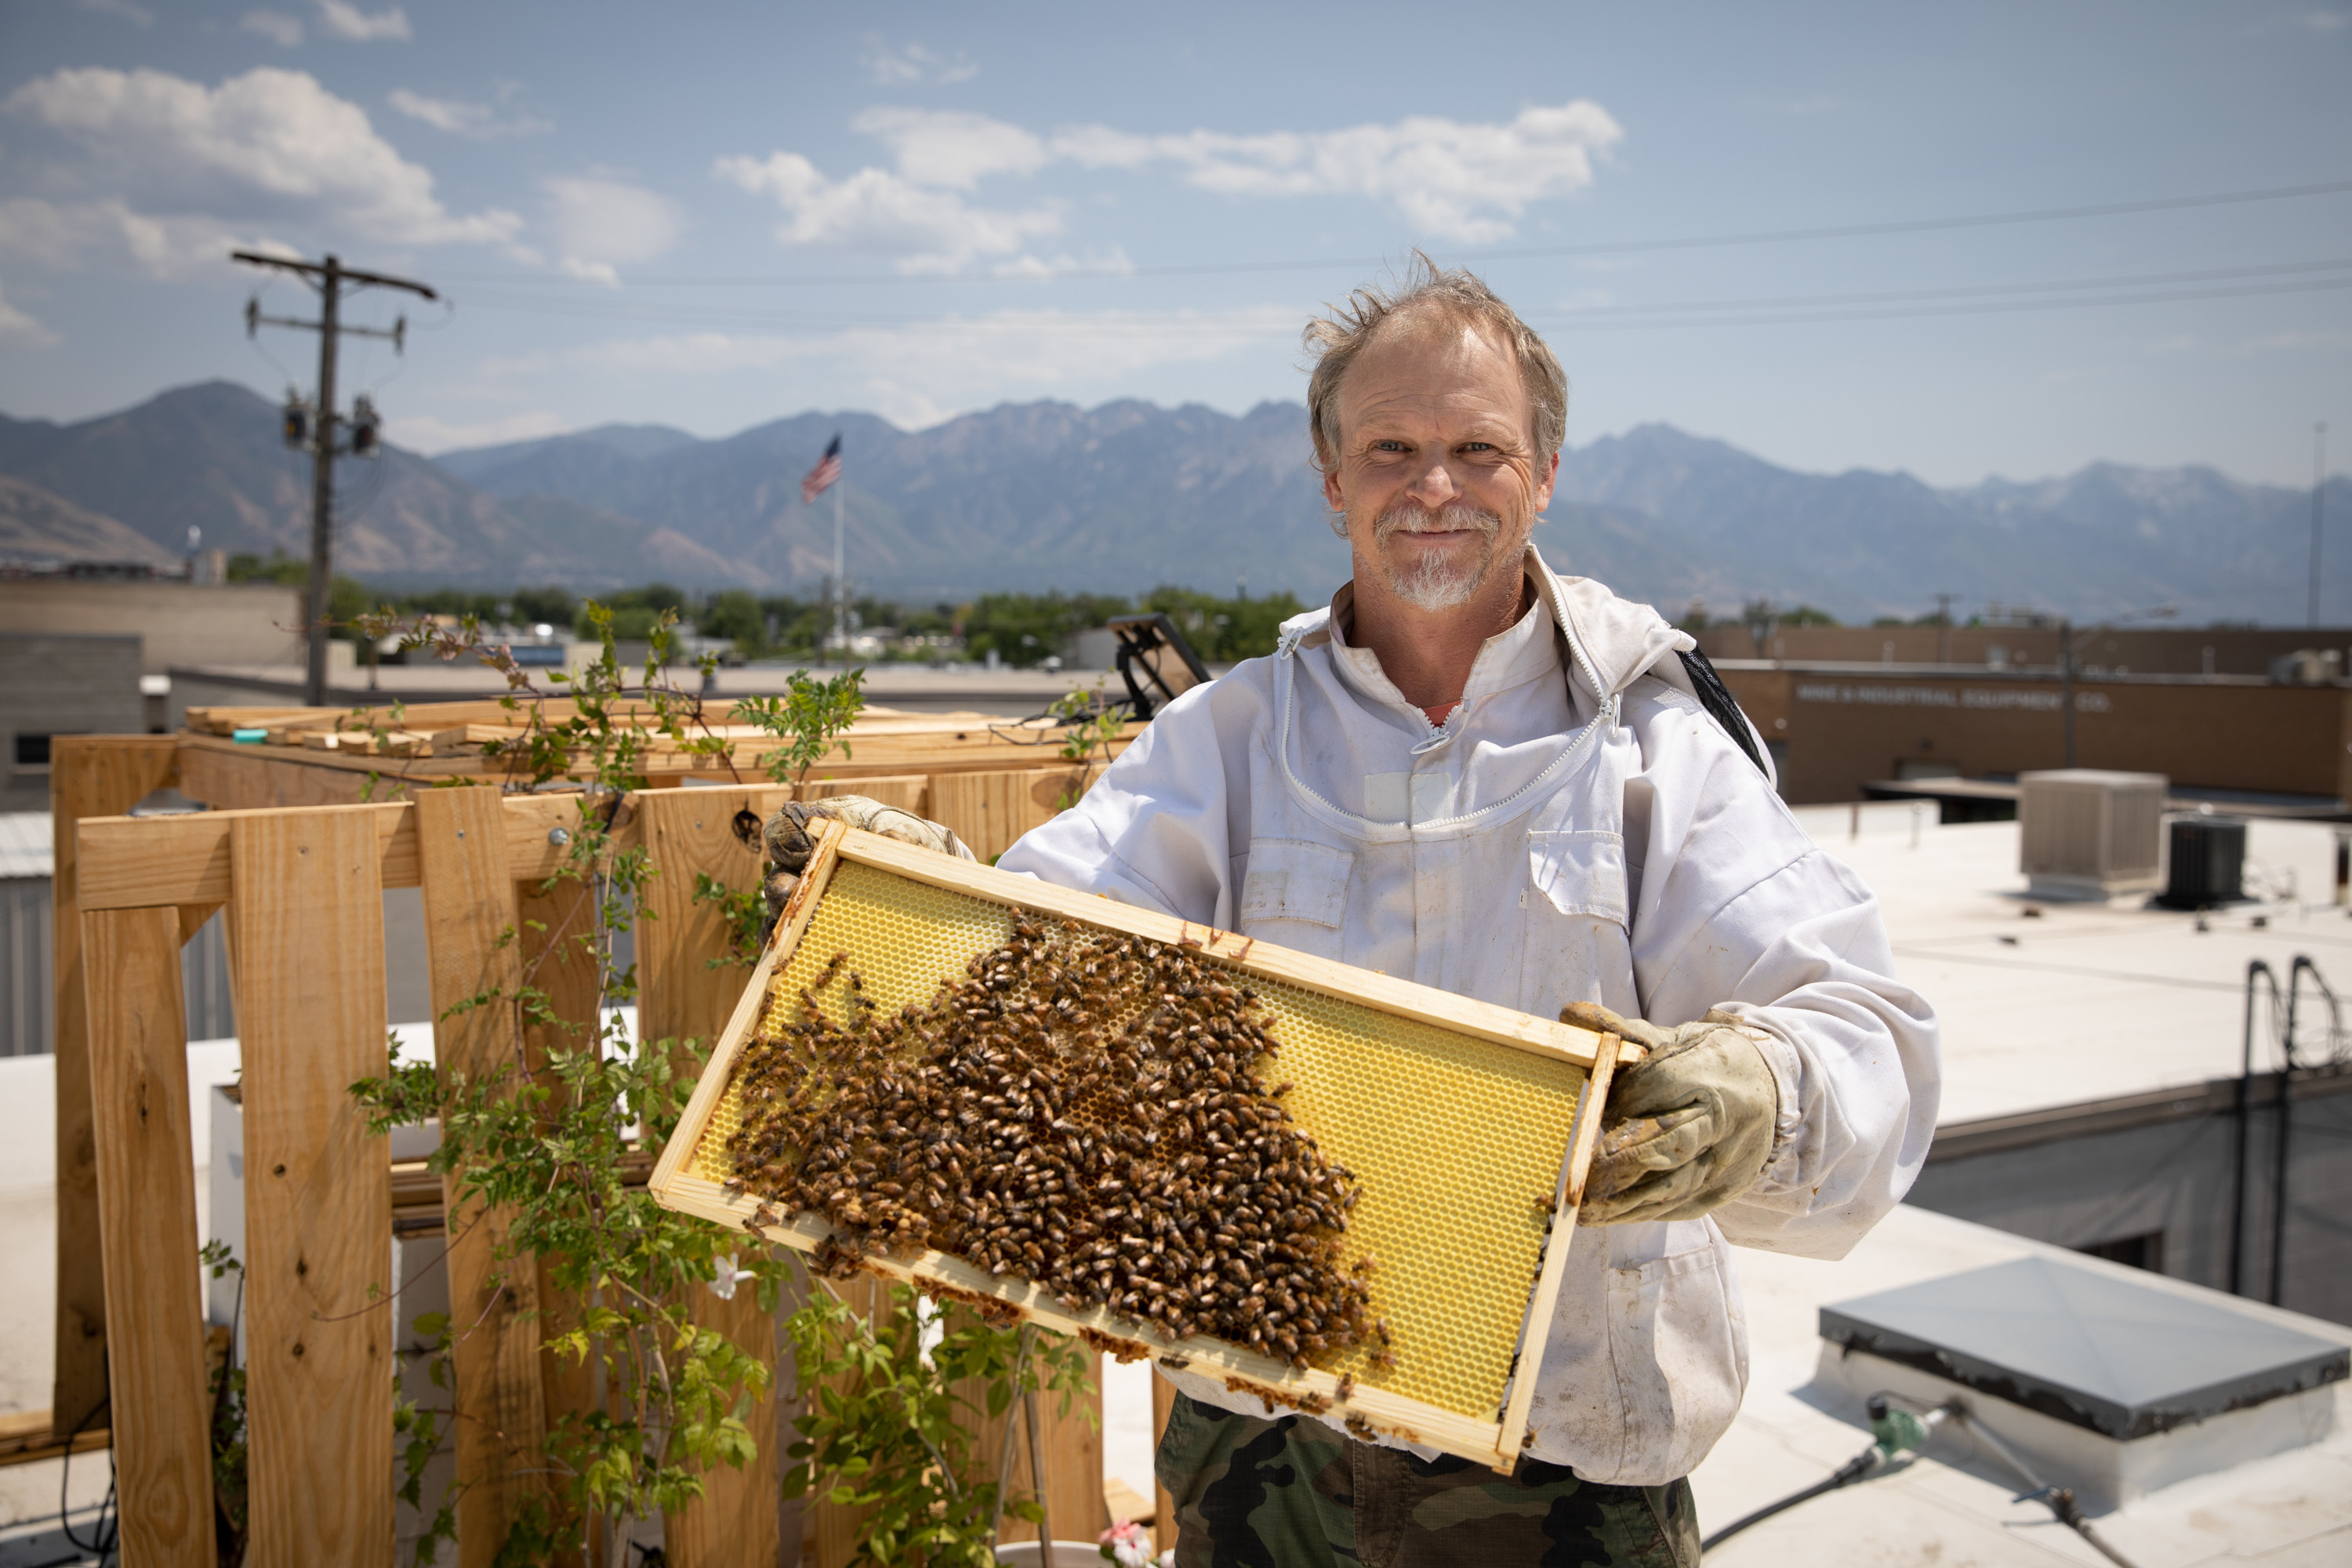 Beehive Distilling Rooftop Beekeeper